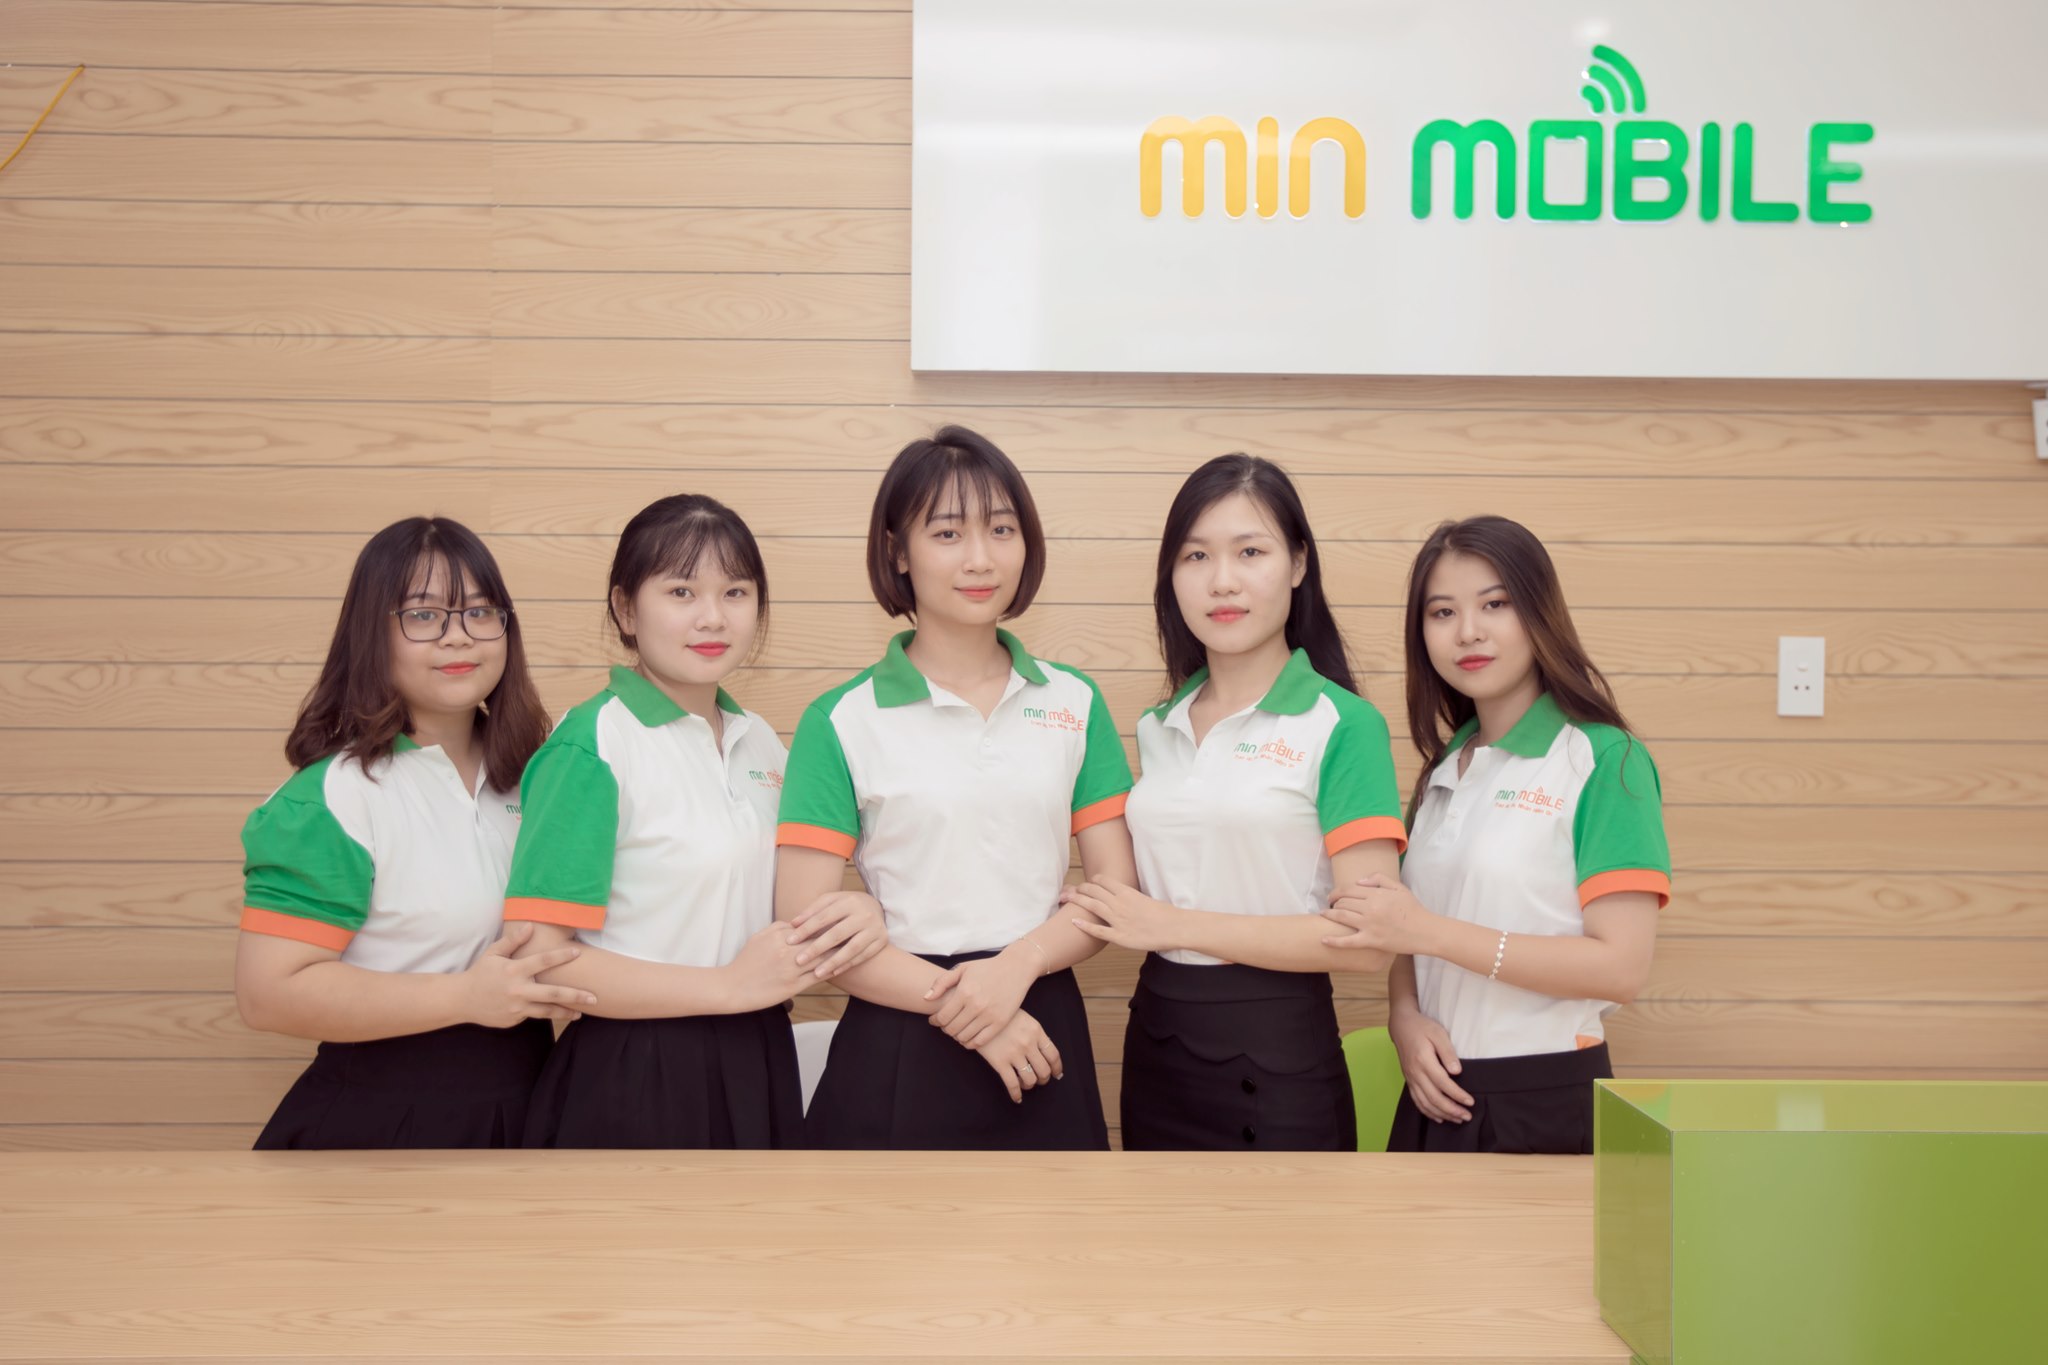 Ngay từ sớm đội ngũ nhân viên của MinMobile đã hoàn thành công tác chuẩn bị phục vụ quý khách hàng trong ngày khai trương chu đáo nhất